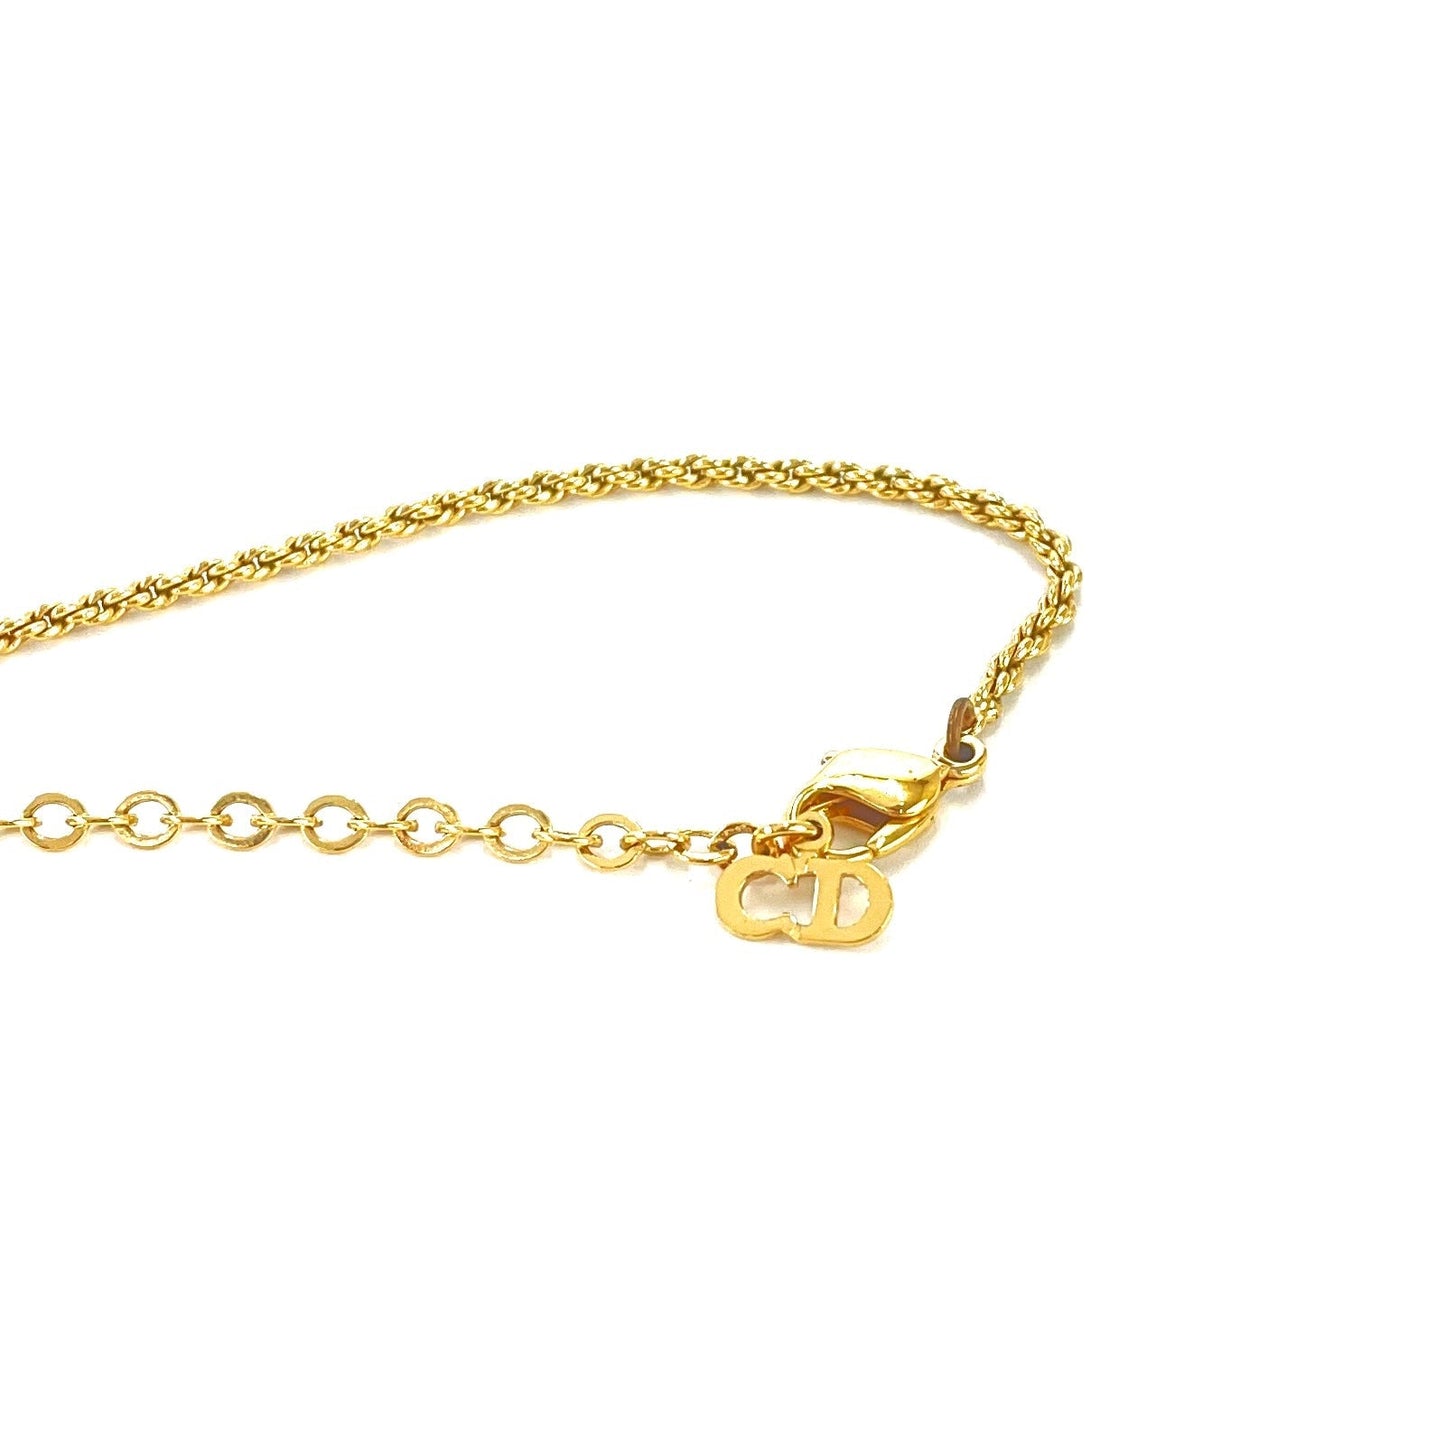 Christian Dior Oval Necklace Emblem logo Gold Vintage Old mvpx2h